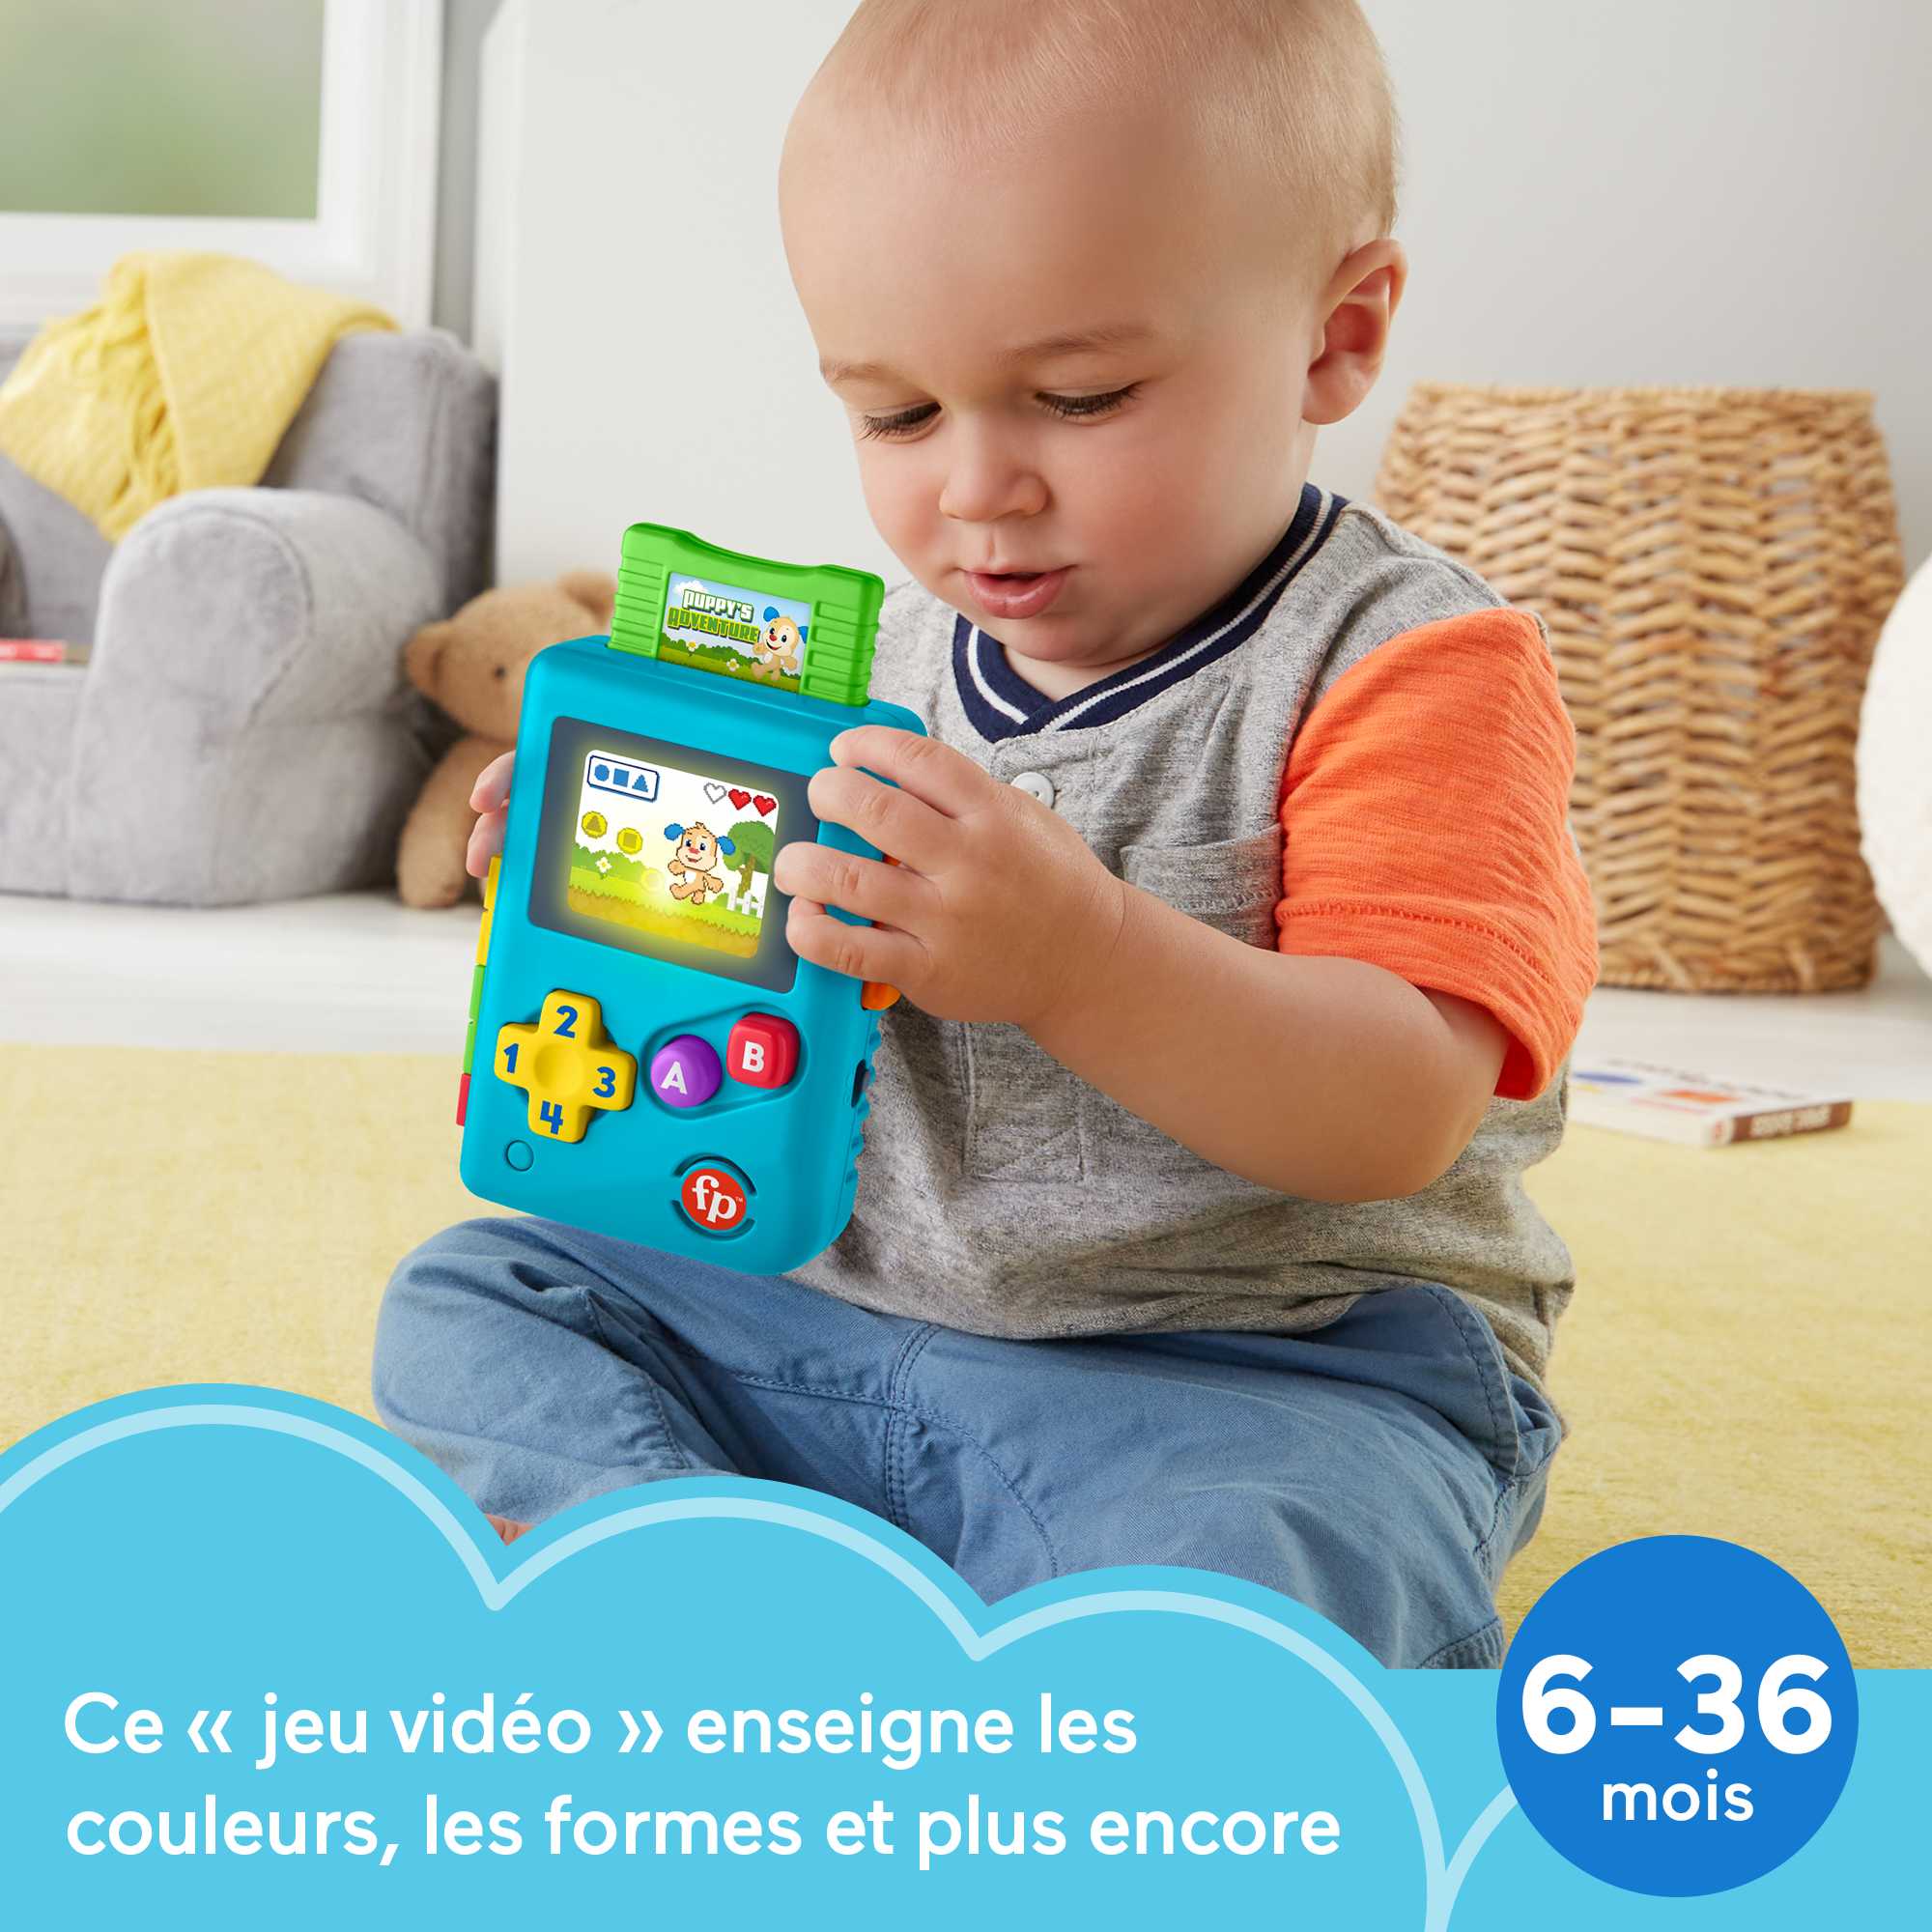 Fisher-Price - Ma première console de jeu​ - Jouet Musical - version  française pour bébé et enfant de 6 mois et plus